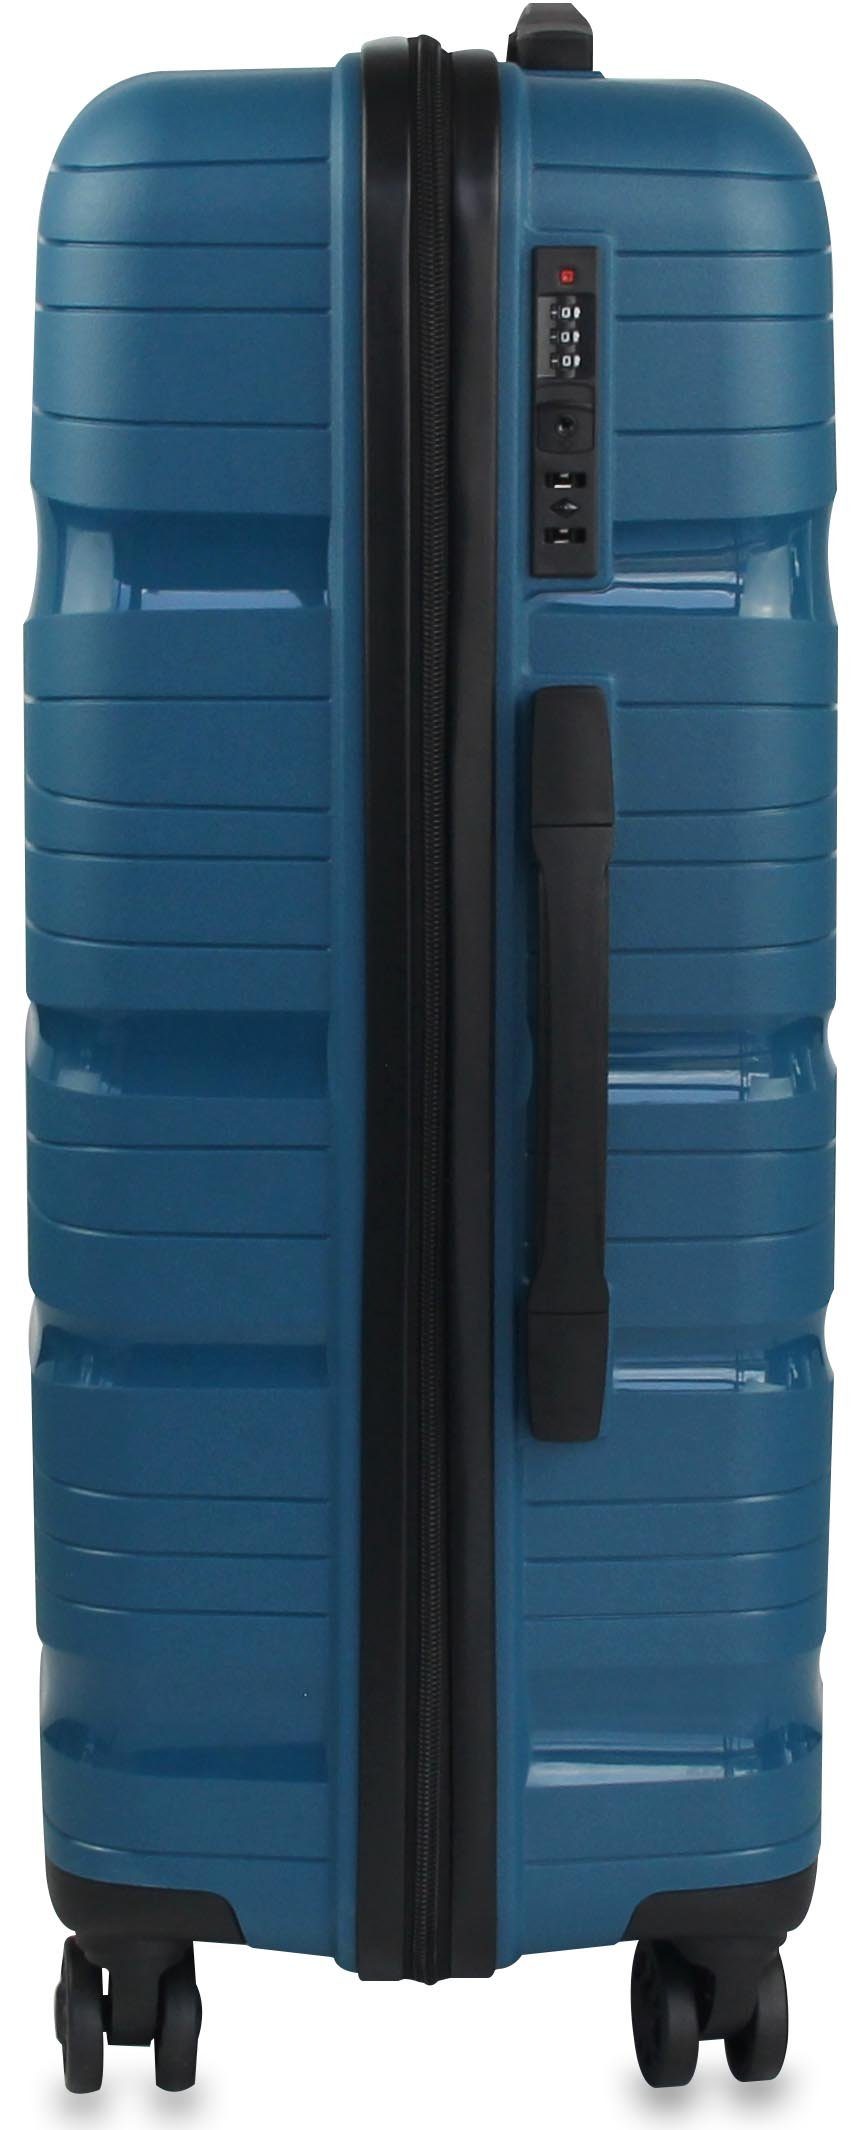 Handgepäck/L/XL drehbar Frentree Rollen, Größen: aus Lakeblau 4 Kunststoff (3 SET) Koffer Trolley TSA-Zahlenschloss, ABS 360° oder mit